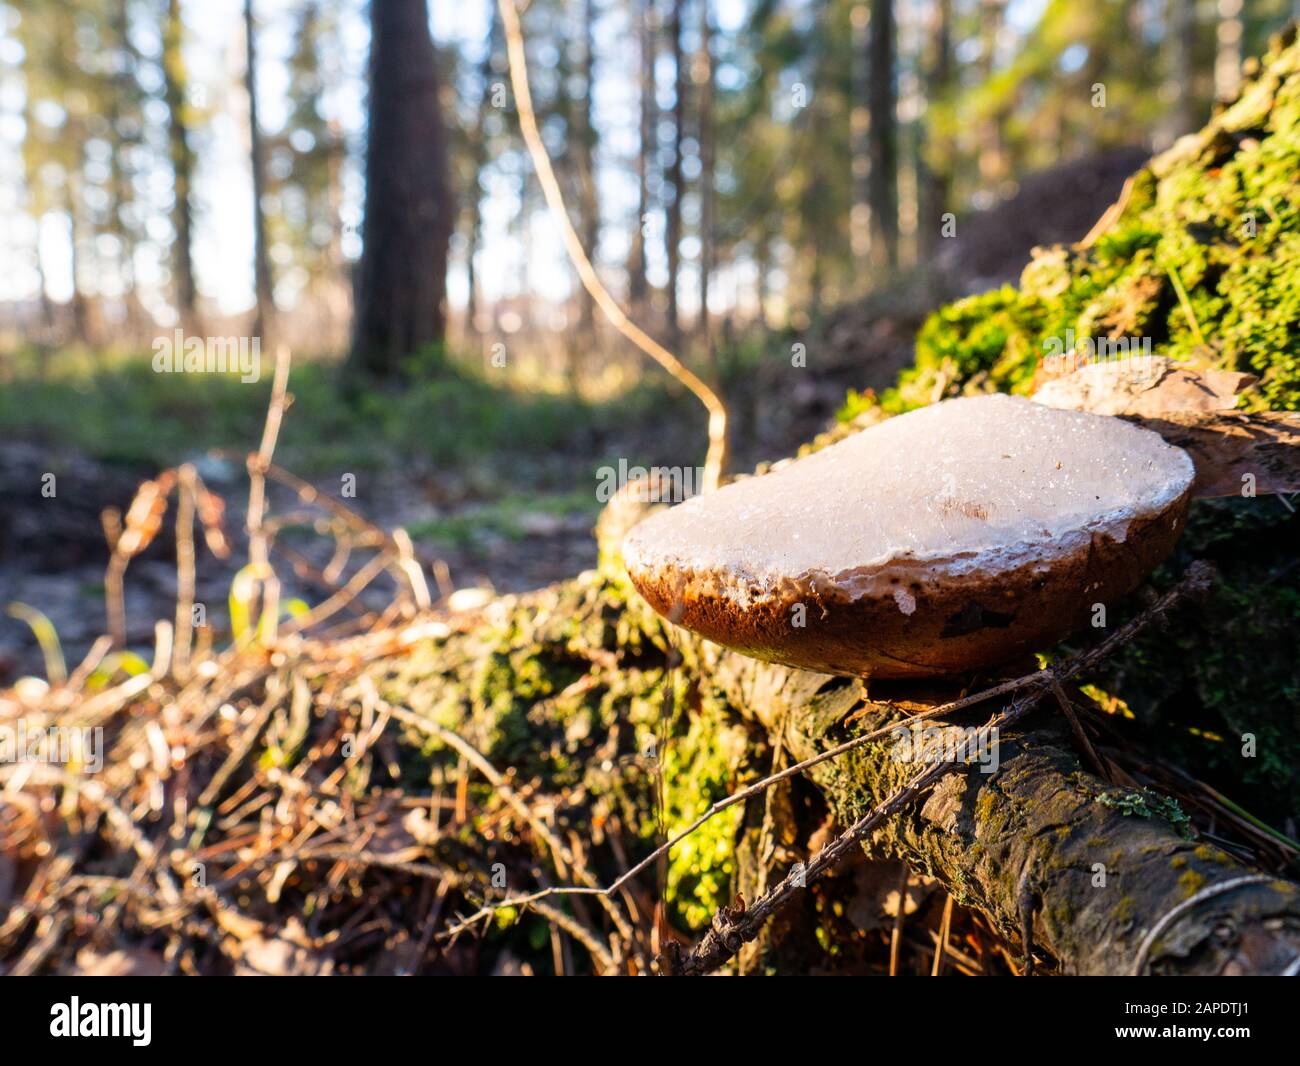 Small white mushroom amanita in green grass. Stock Photo